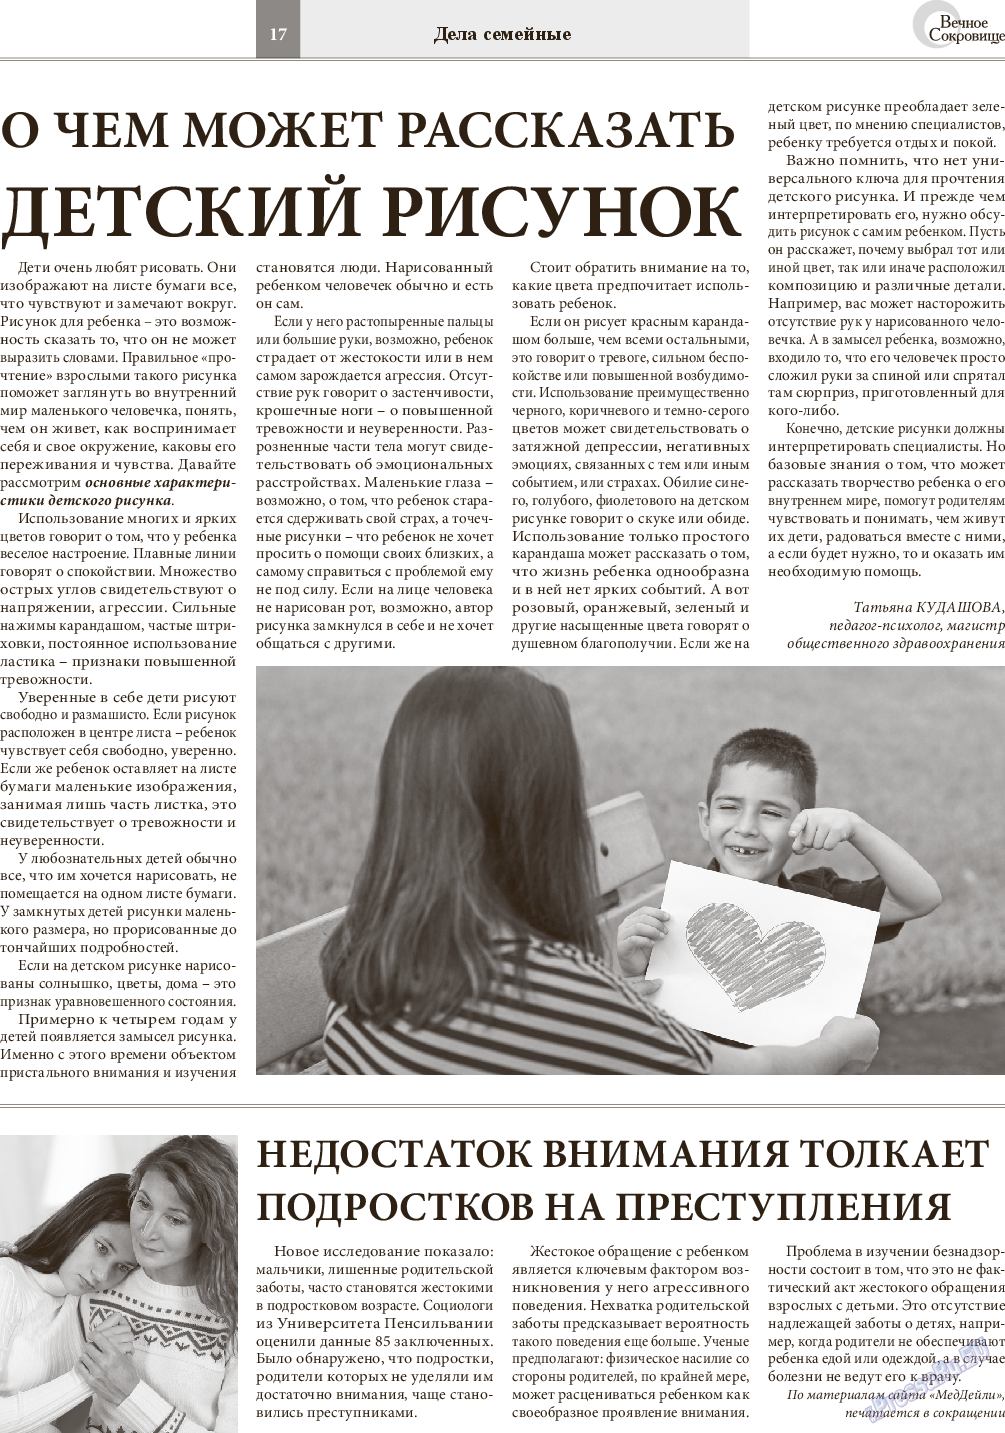 Вечное сокровище (газета). 2014 год, номер 6, стр. 17